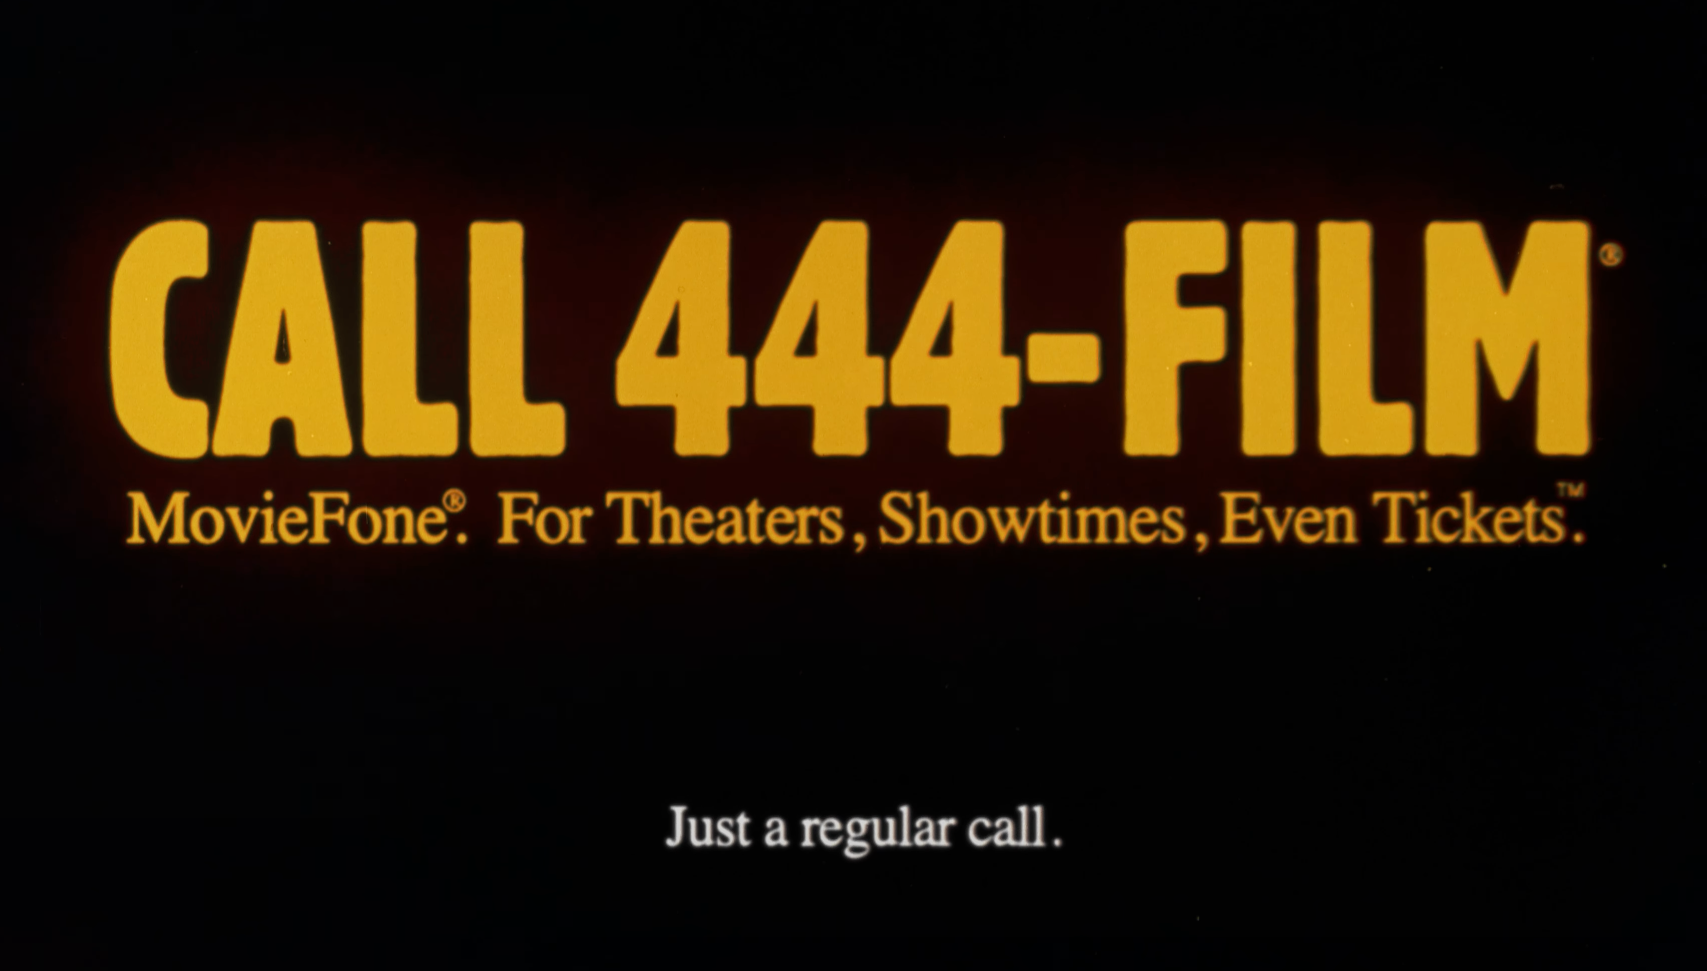 &quot;Call 444-FILM&quot;